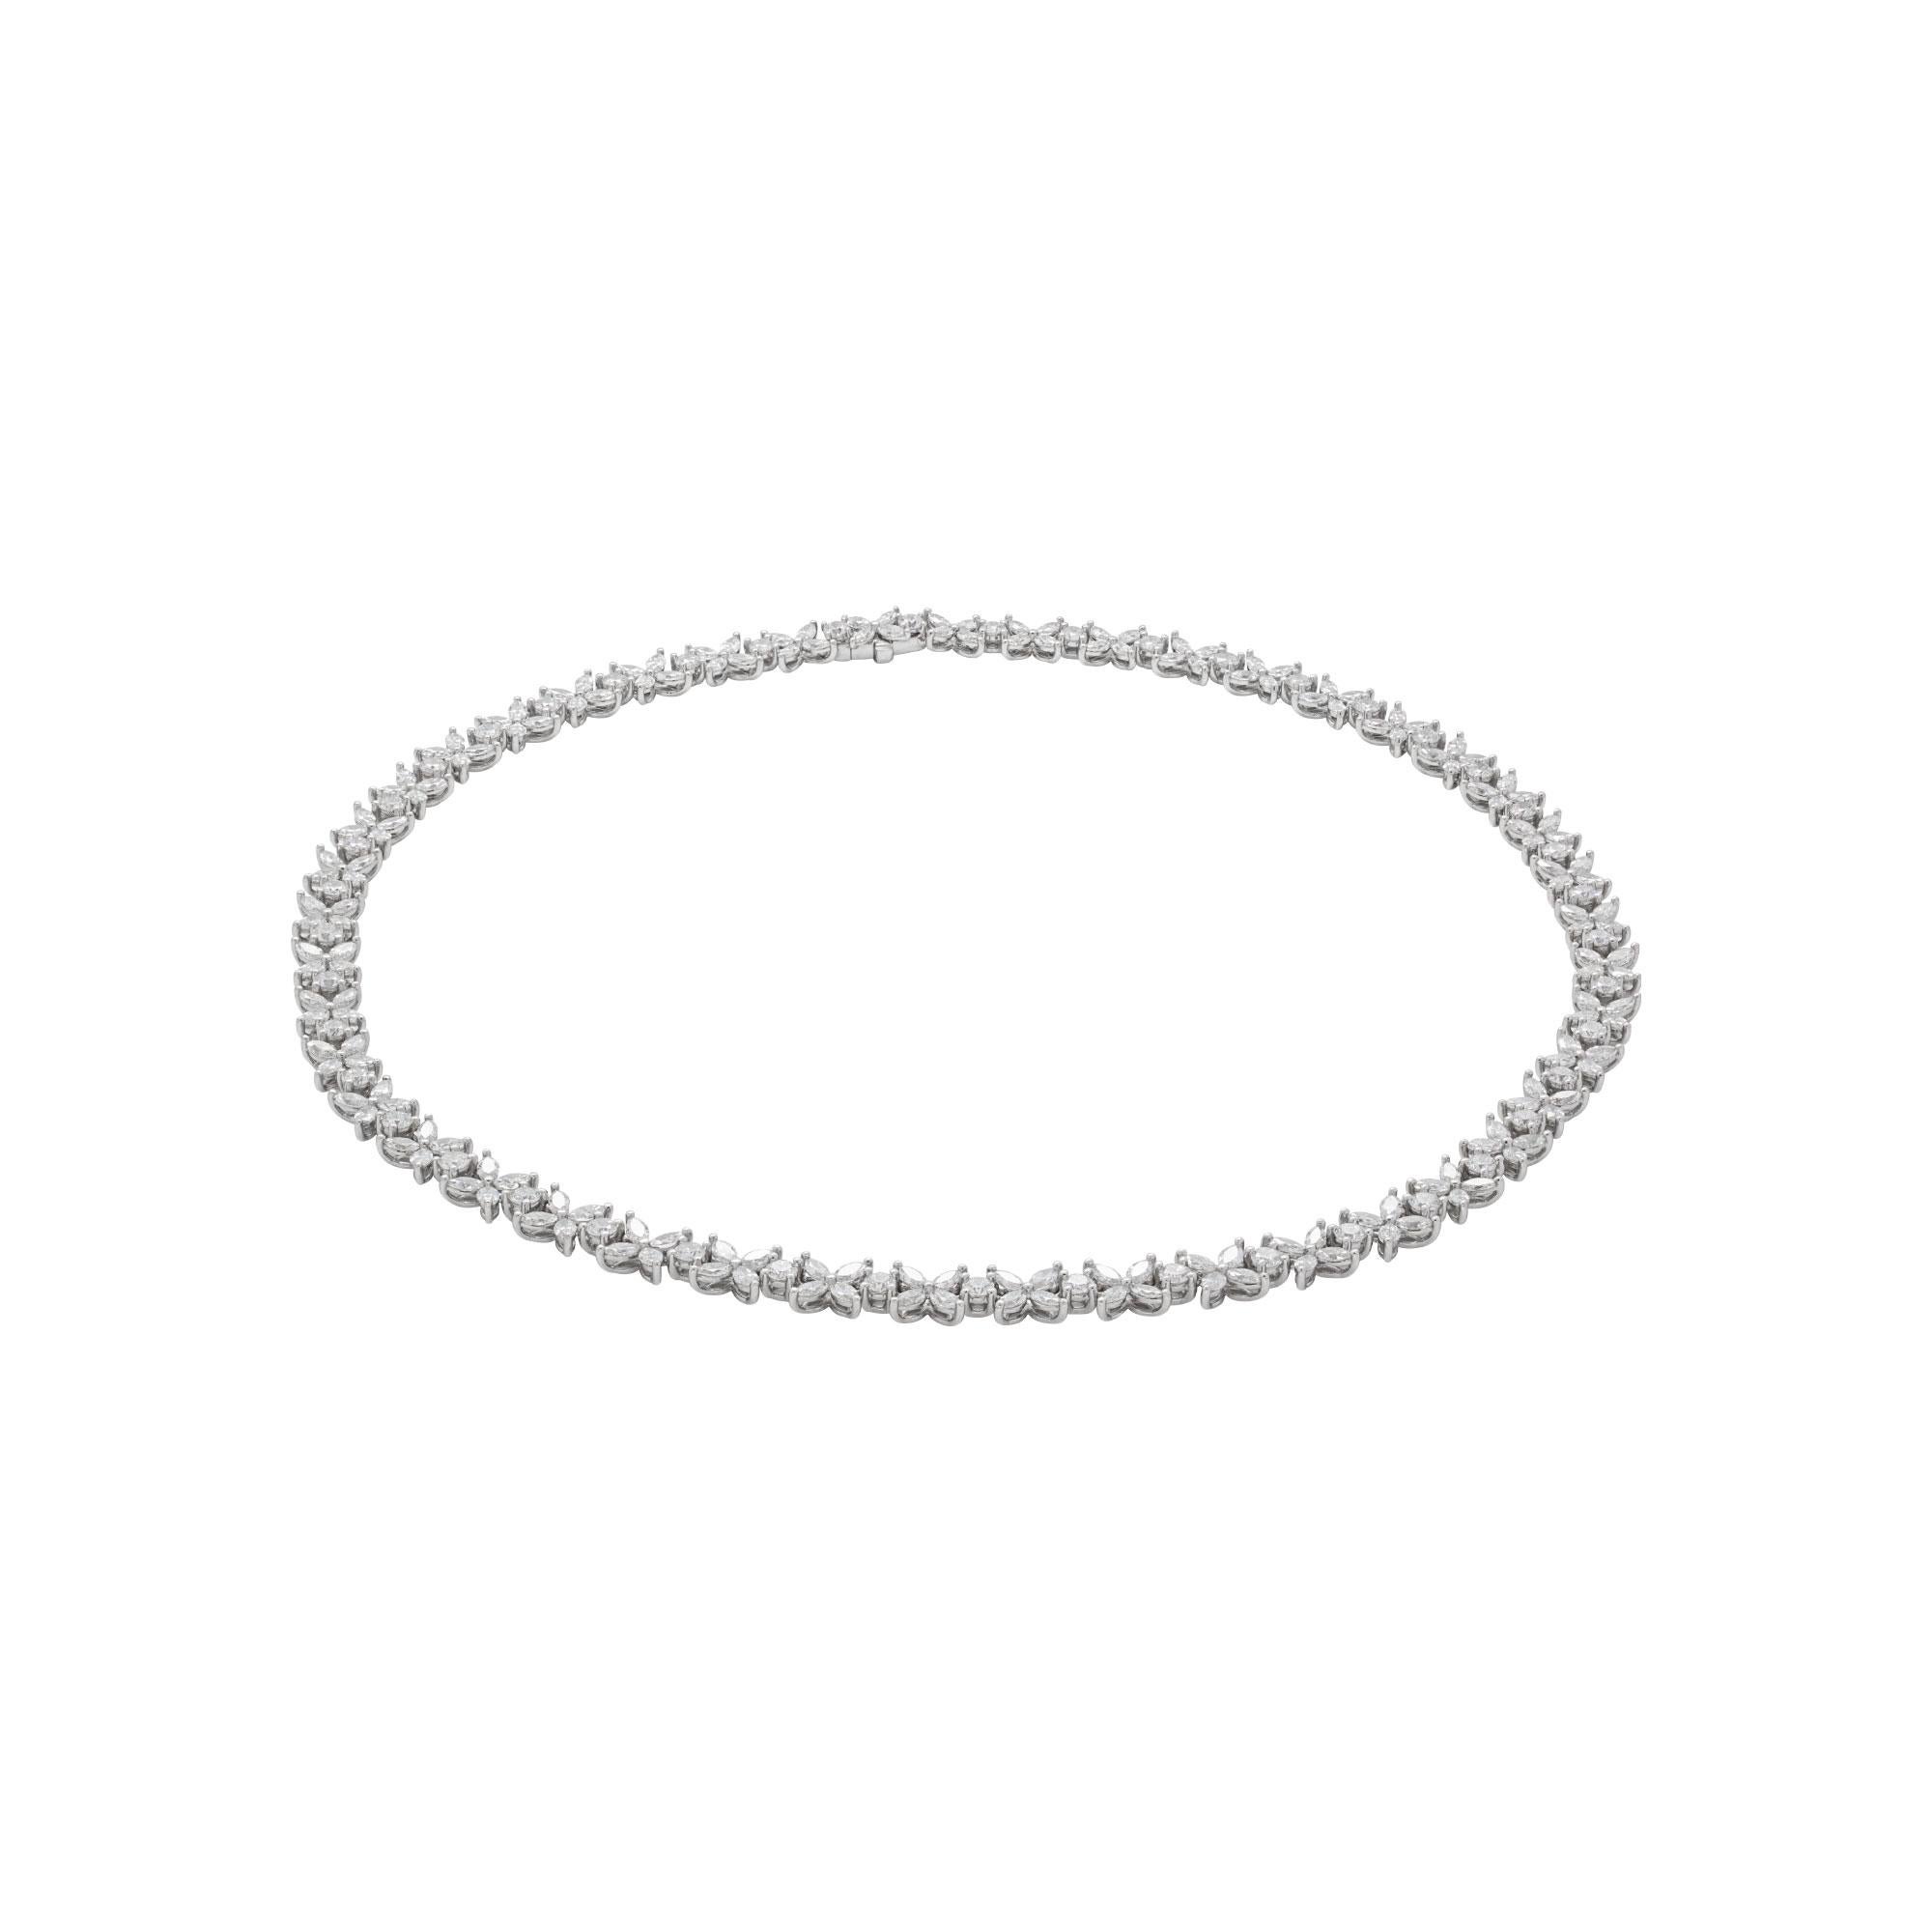 Diamant-Cluster-Tennis-Halskette
Eingefasst in Platin 950 mit 180 Diamanten in Marquise-Form und 45 runden Diamanten im Brillantschliff mit einem Gesamtgewicht von 16,05 ct und einer geschätzten Farbe von F-G und einer Reinheit von VVS - ein